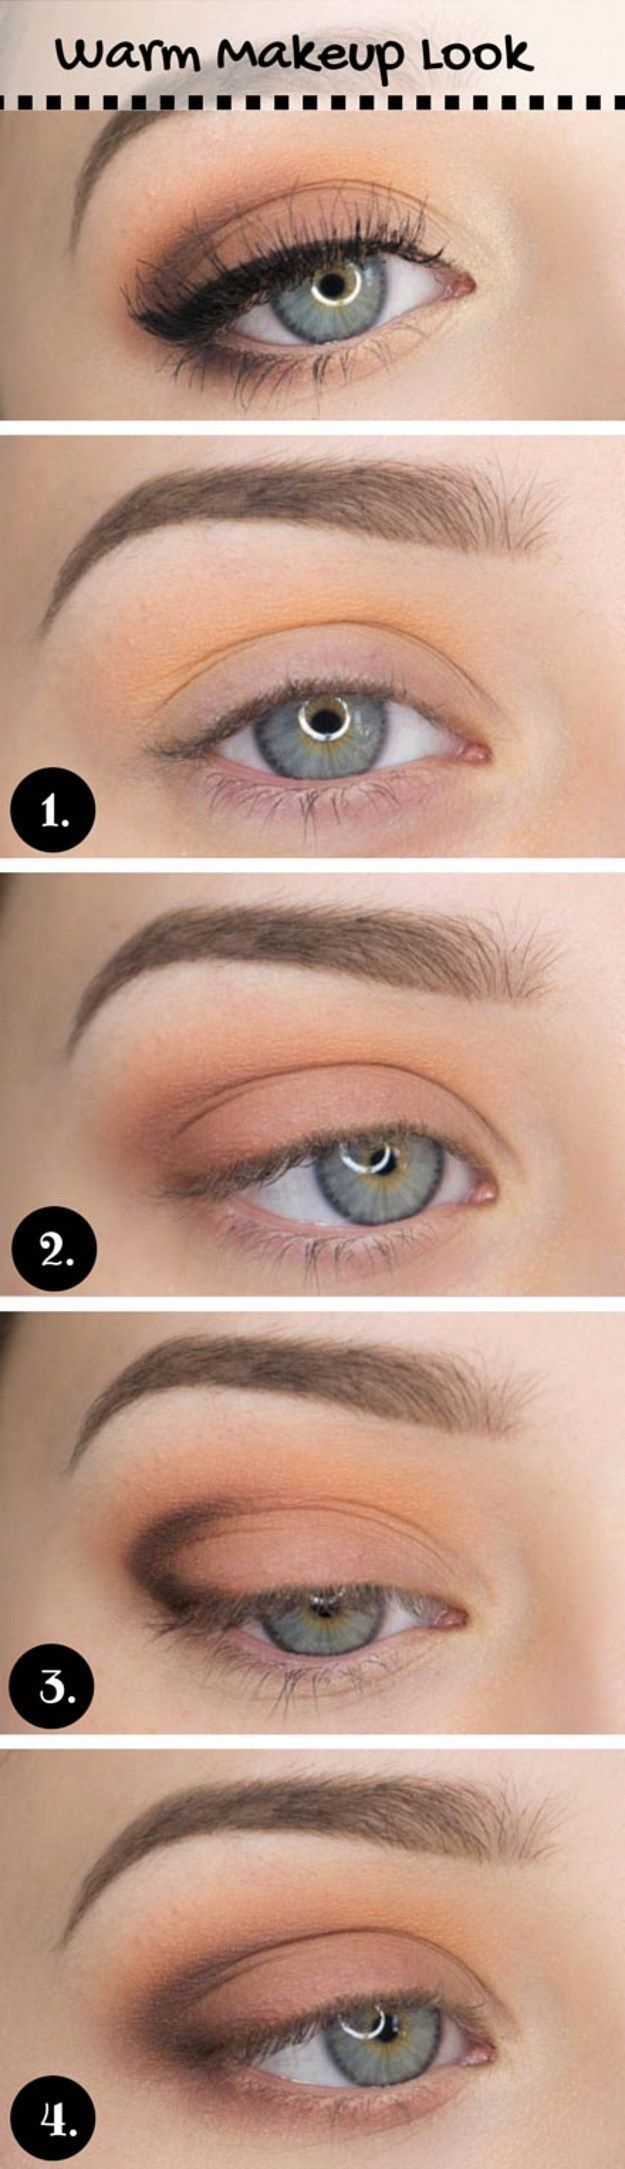 Casual Eye Makeup Eye Makeup How To Do Casual Makeup Look Everyday Makeup